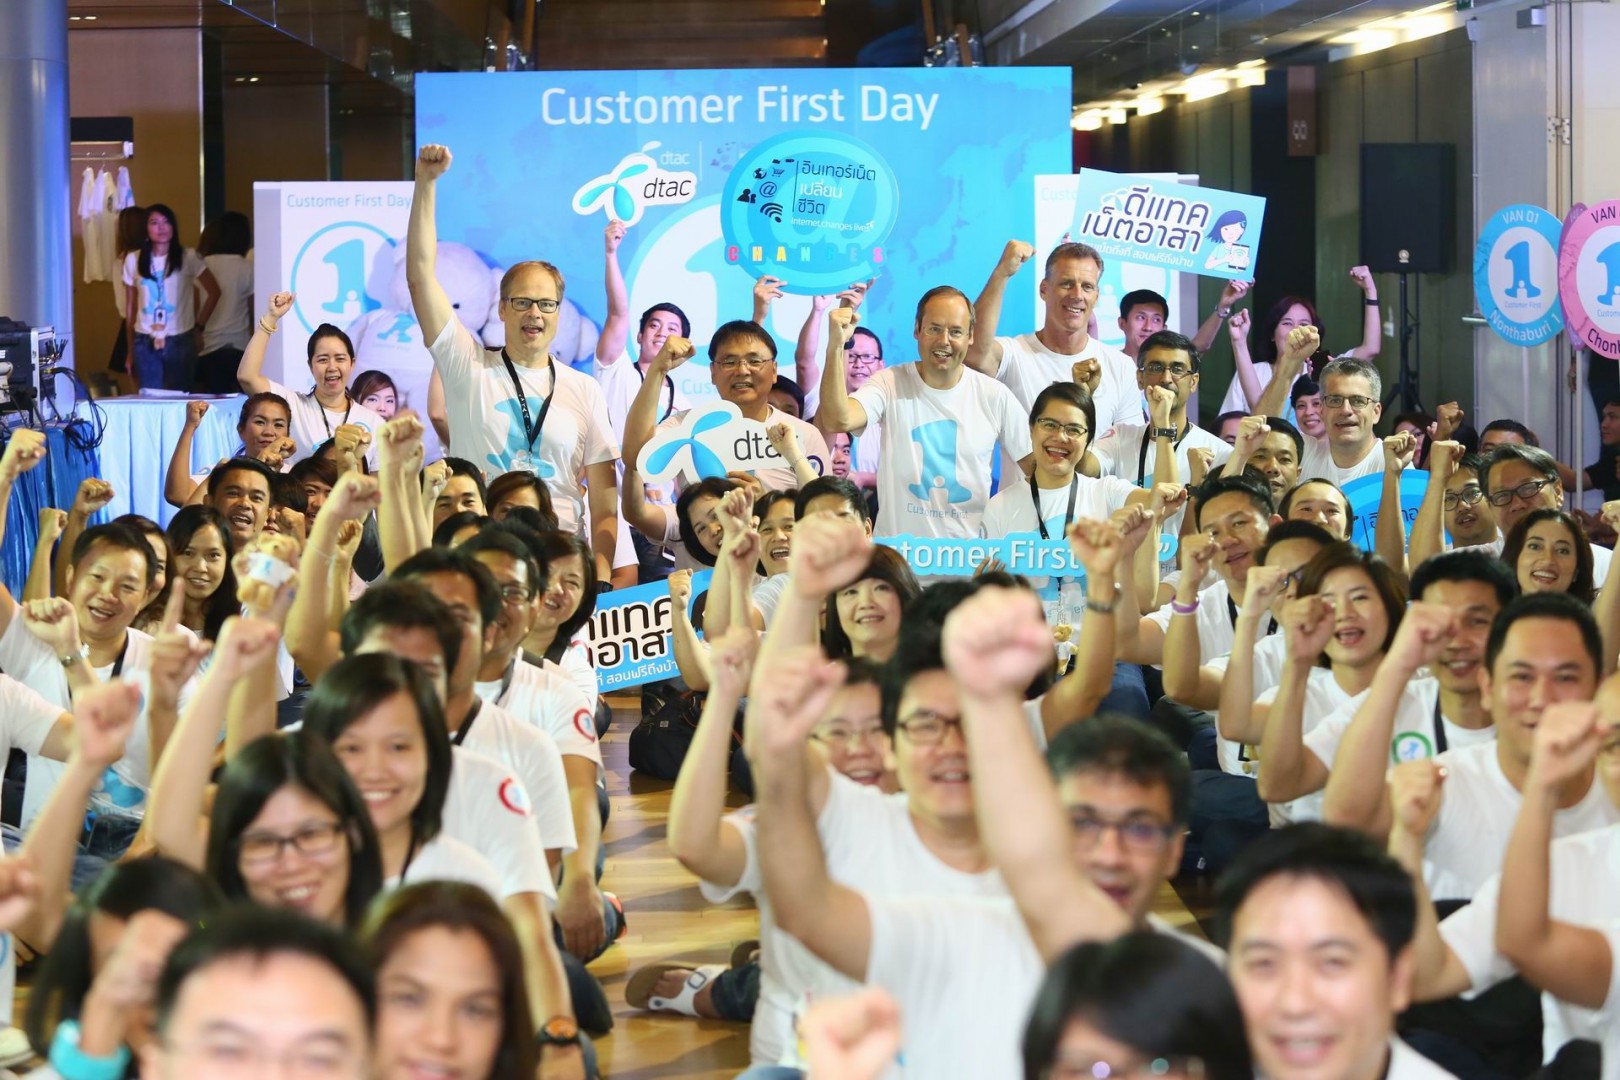 dtac ตอกย้ำภารกิจ ‘อินเทอร์เน็ตเปลี่ยนชีวิต’ จัดงาน Customer First Day 2558 “ชวนเที่ยว ชวนซื้อ” แชร์ลง Social Media